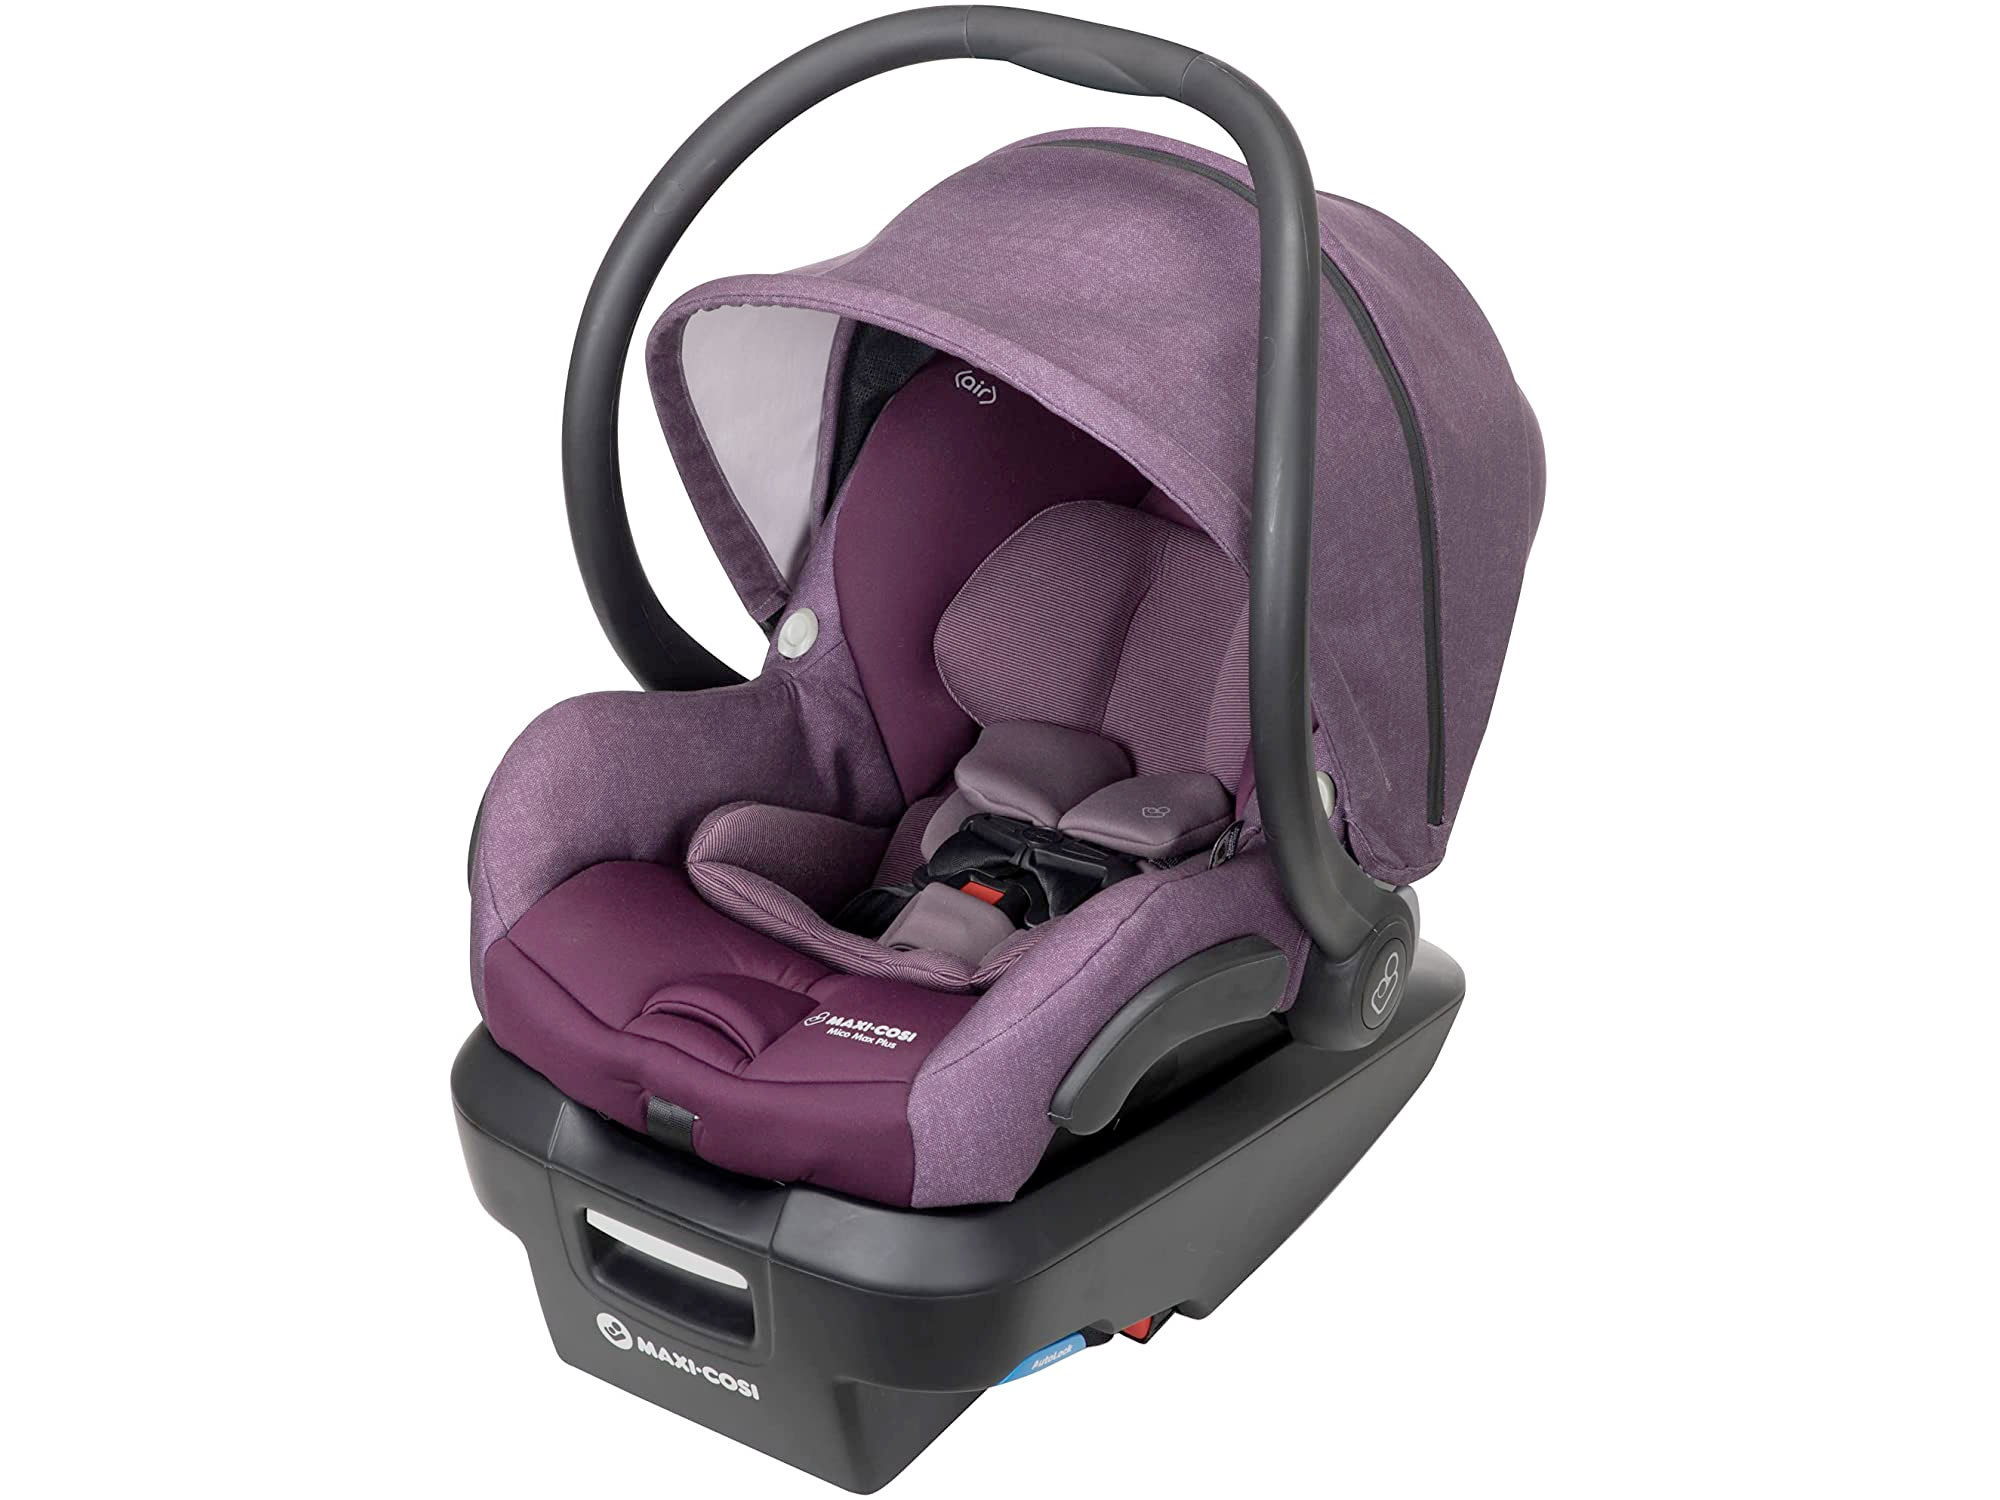 Amazon：Maxi-Cosi Mico Max Plus Infant Car Seat只卖$199.99